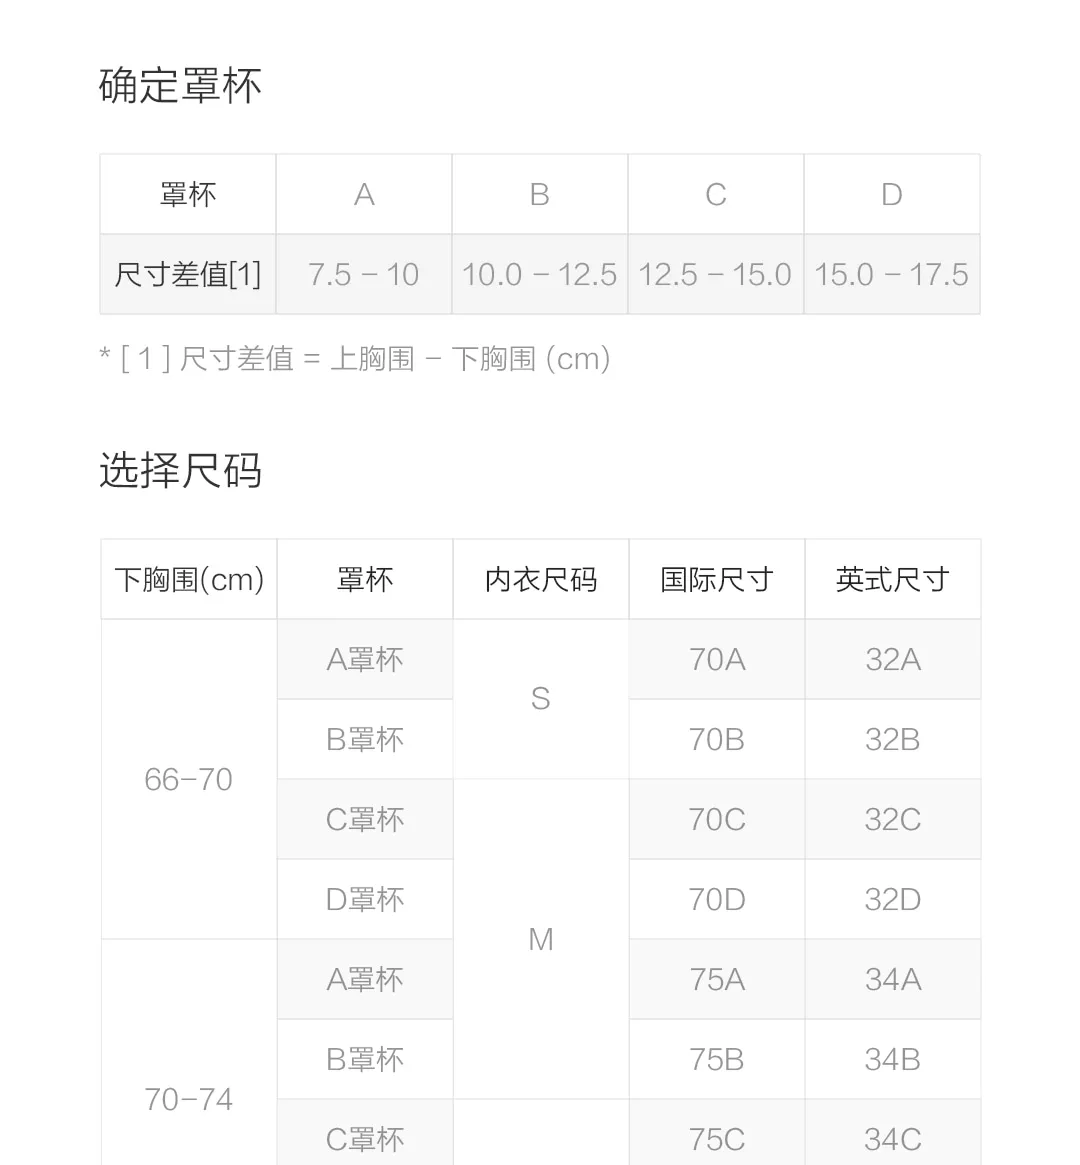 Xiaomi спортивный бюстгальтер для тренировок, Спортивное нижнее белье, высокая эластичность, дышащий Топ, перекрестная спина, для фитнеса, спортивная майка, женский спортивный бюстгальтер для йоги